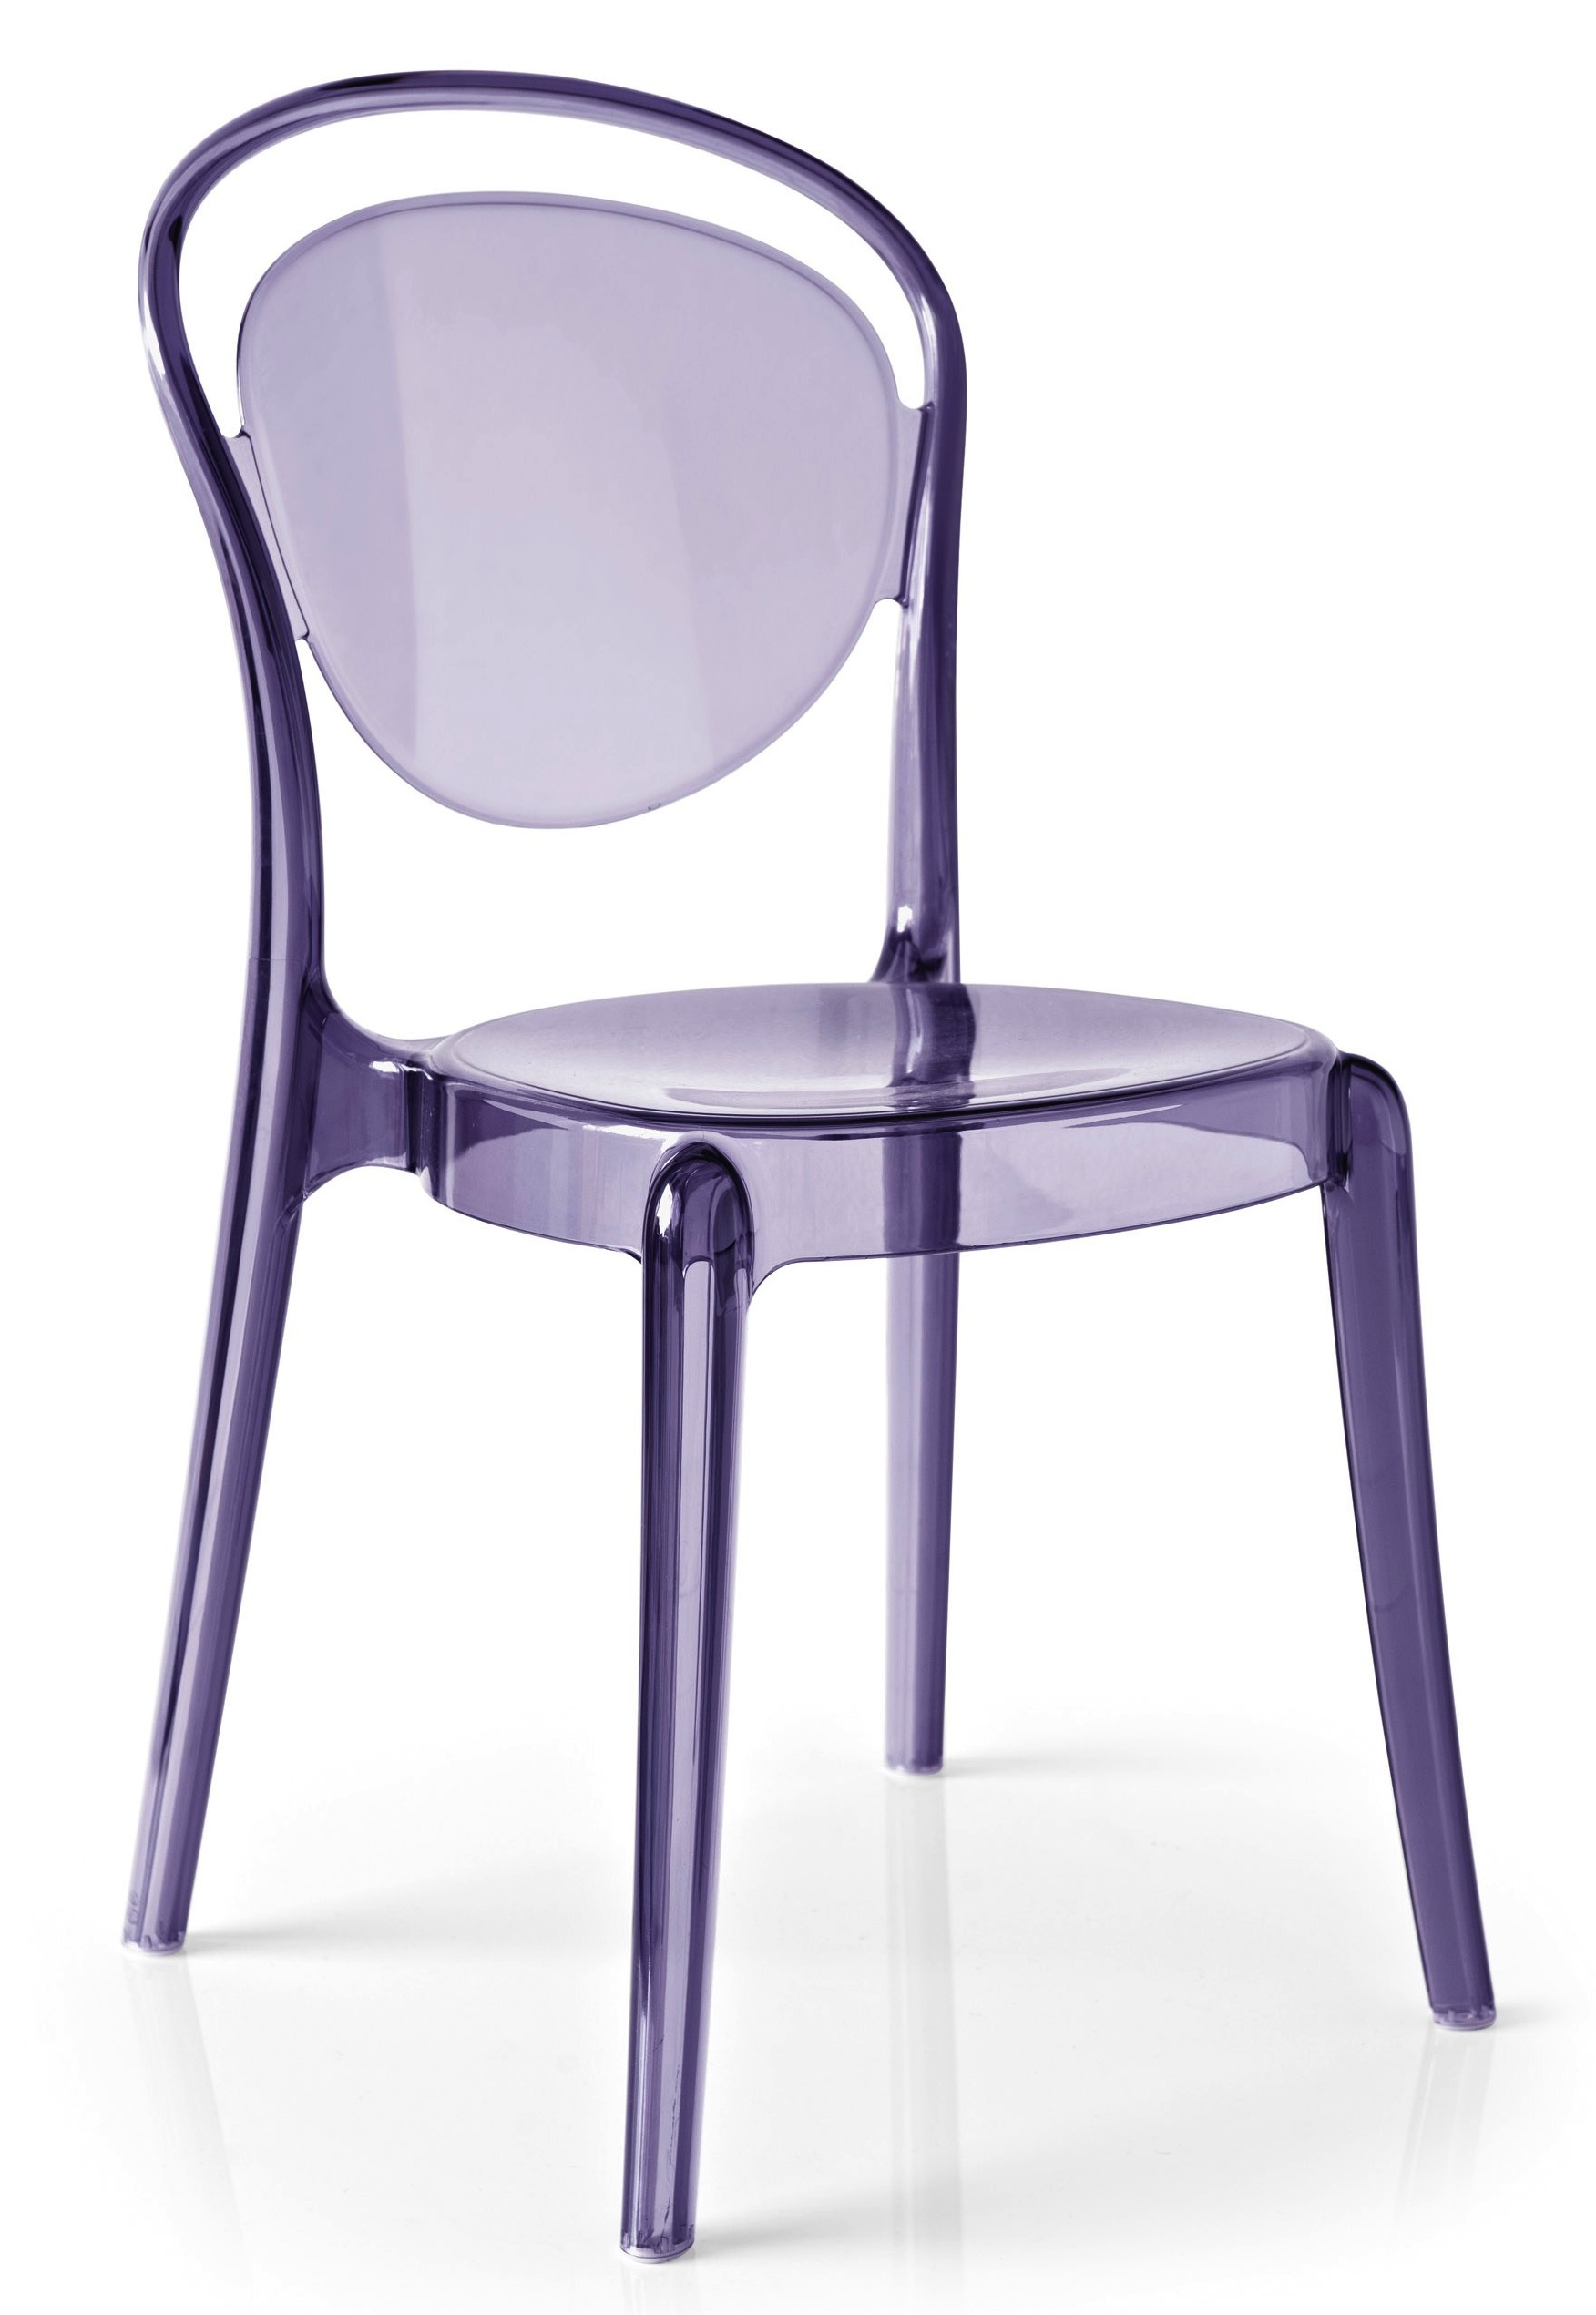 parisienne-chair-in-purple.jpg